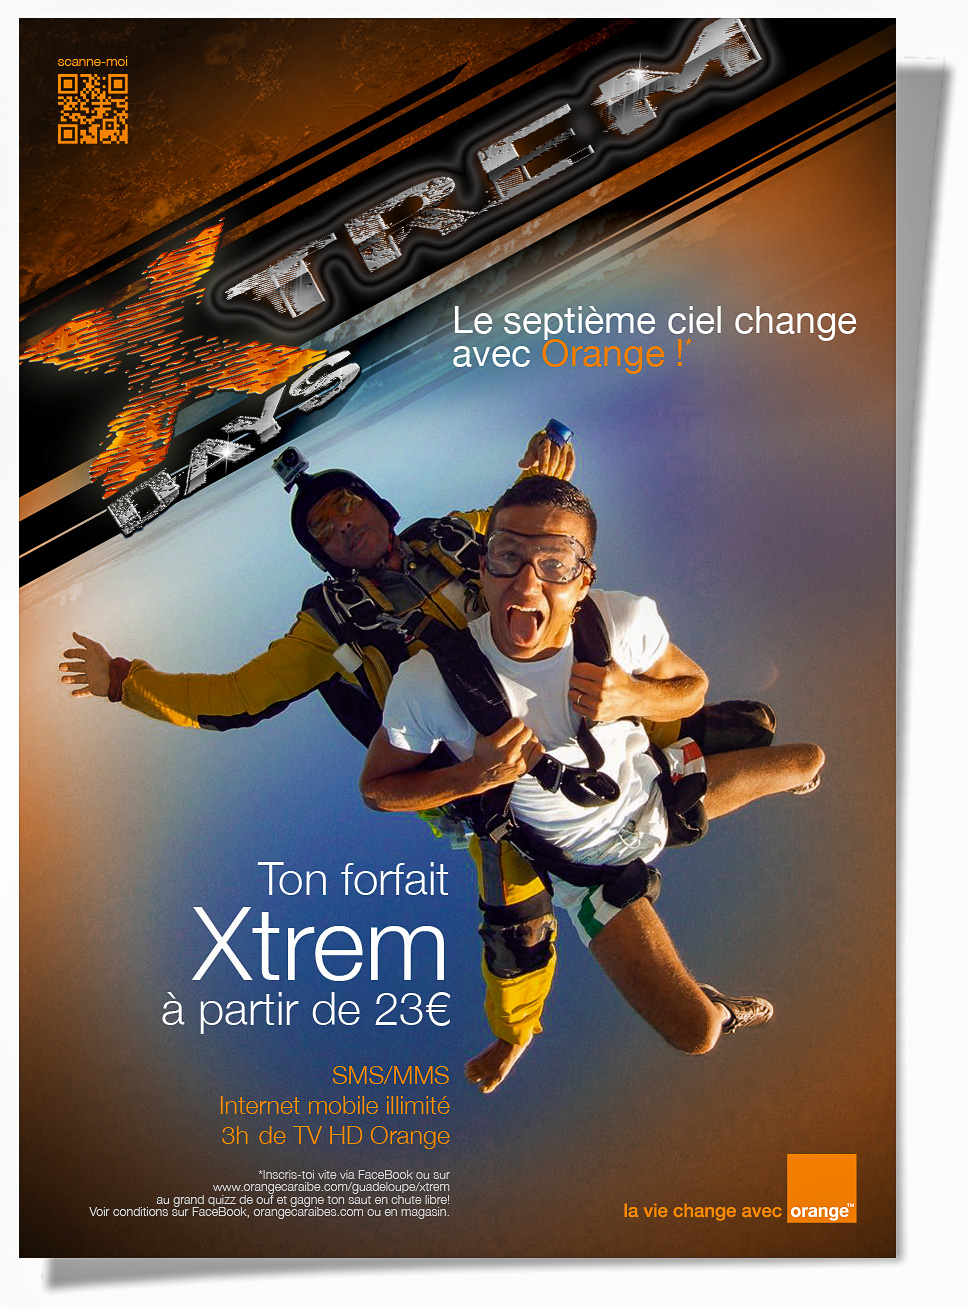 Flyer présentant l'offre "jeune" Xtrem et les journées spéciales auxquelles elle donne accès.